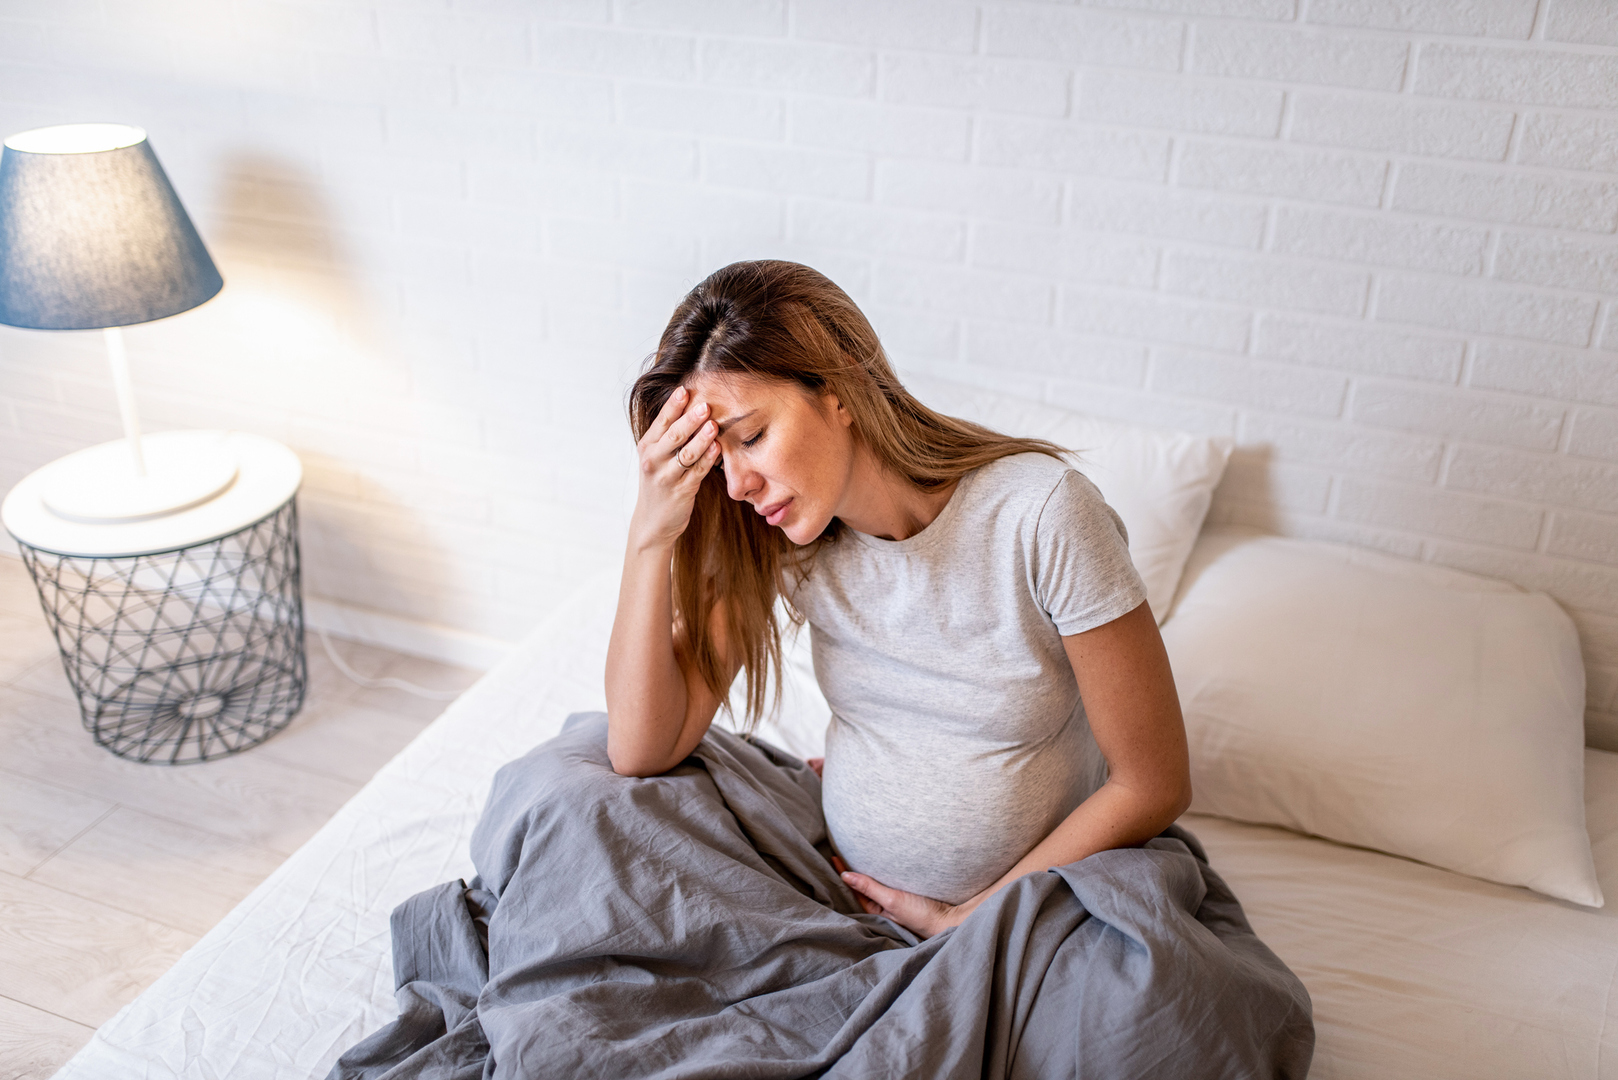 الإجهاد المزمن أثناء الحمل يؤثر على قدرة الجنين على امتصاص الحديد